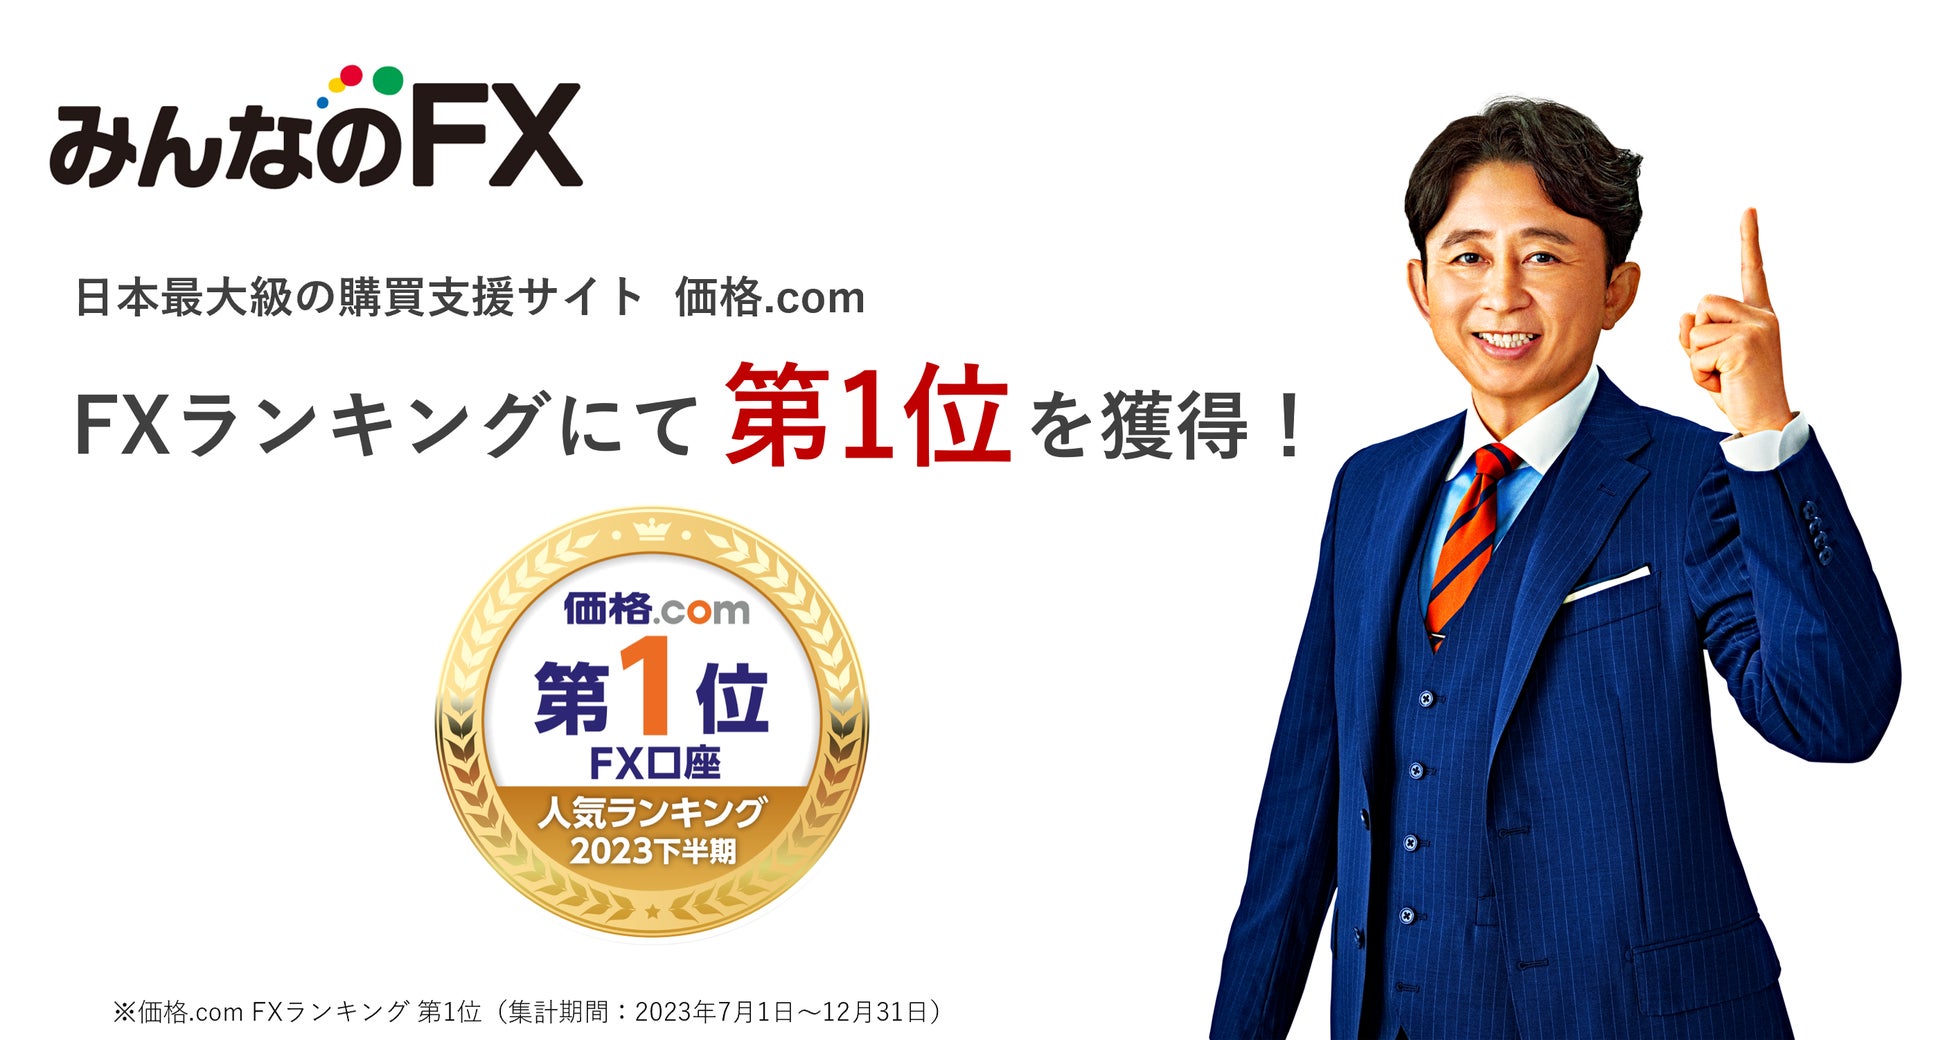 日本最大級の購買支援サイト「価格.com」にて、2023年下半期FXランキング第1位を獲得！